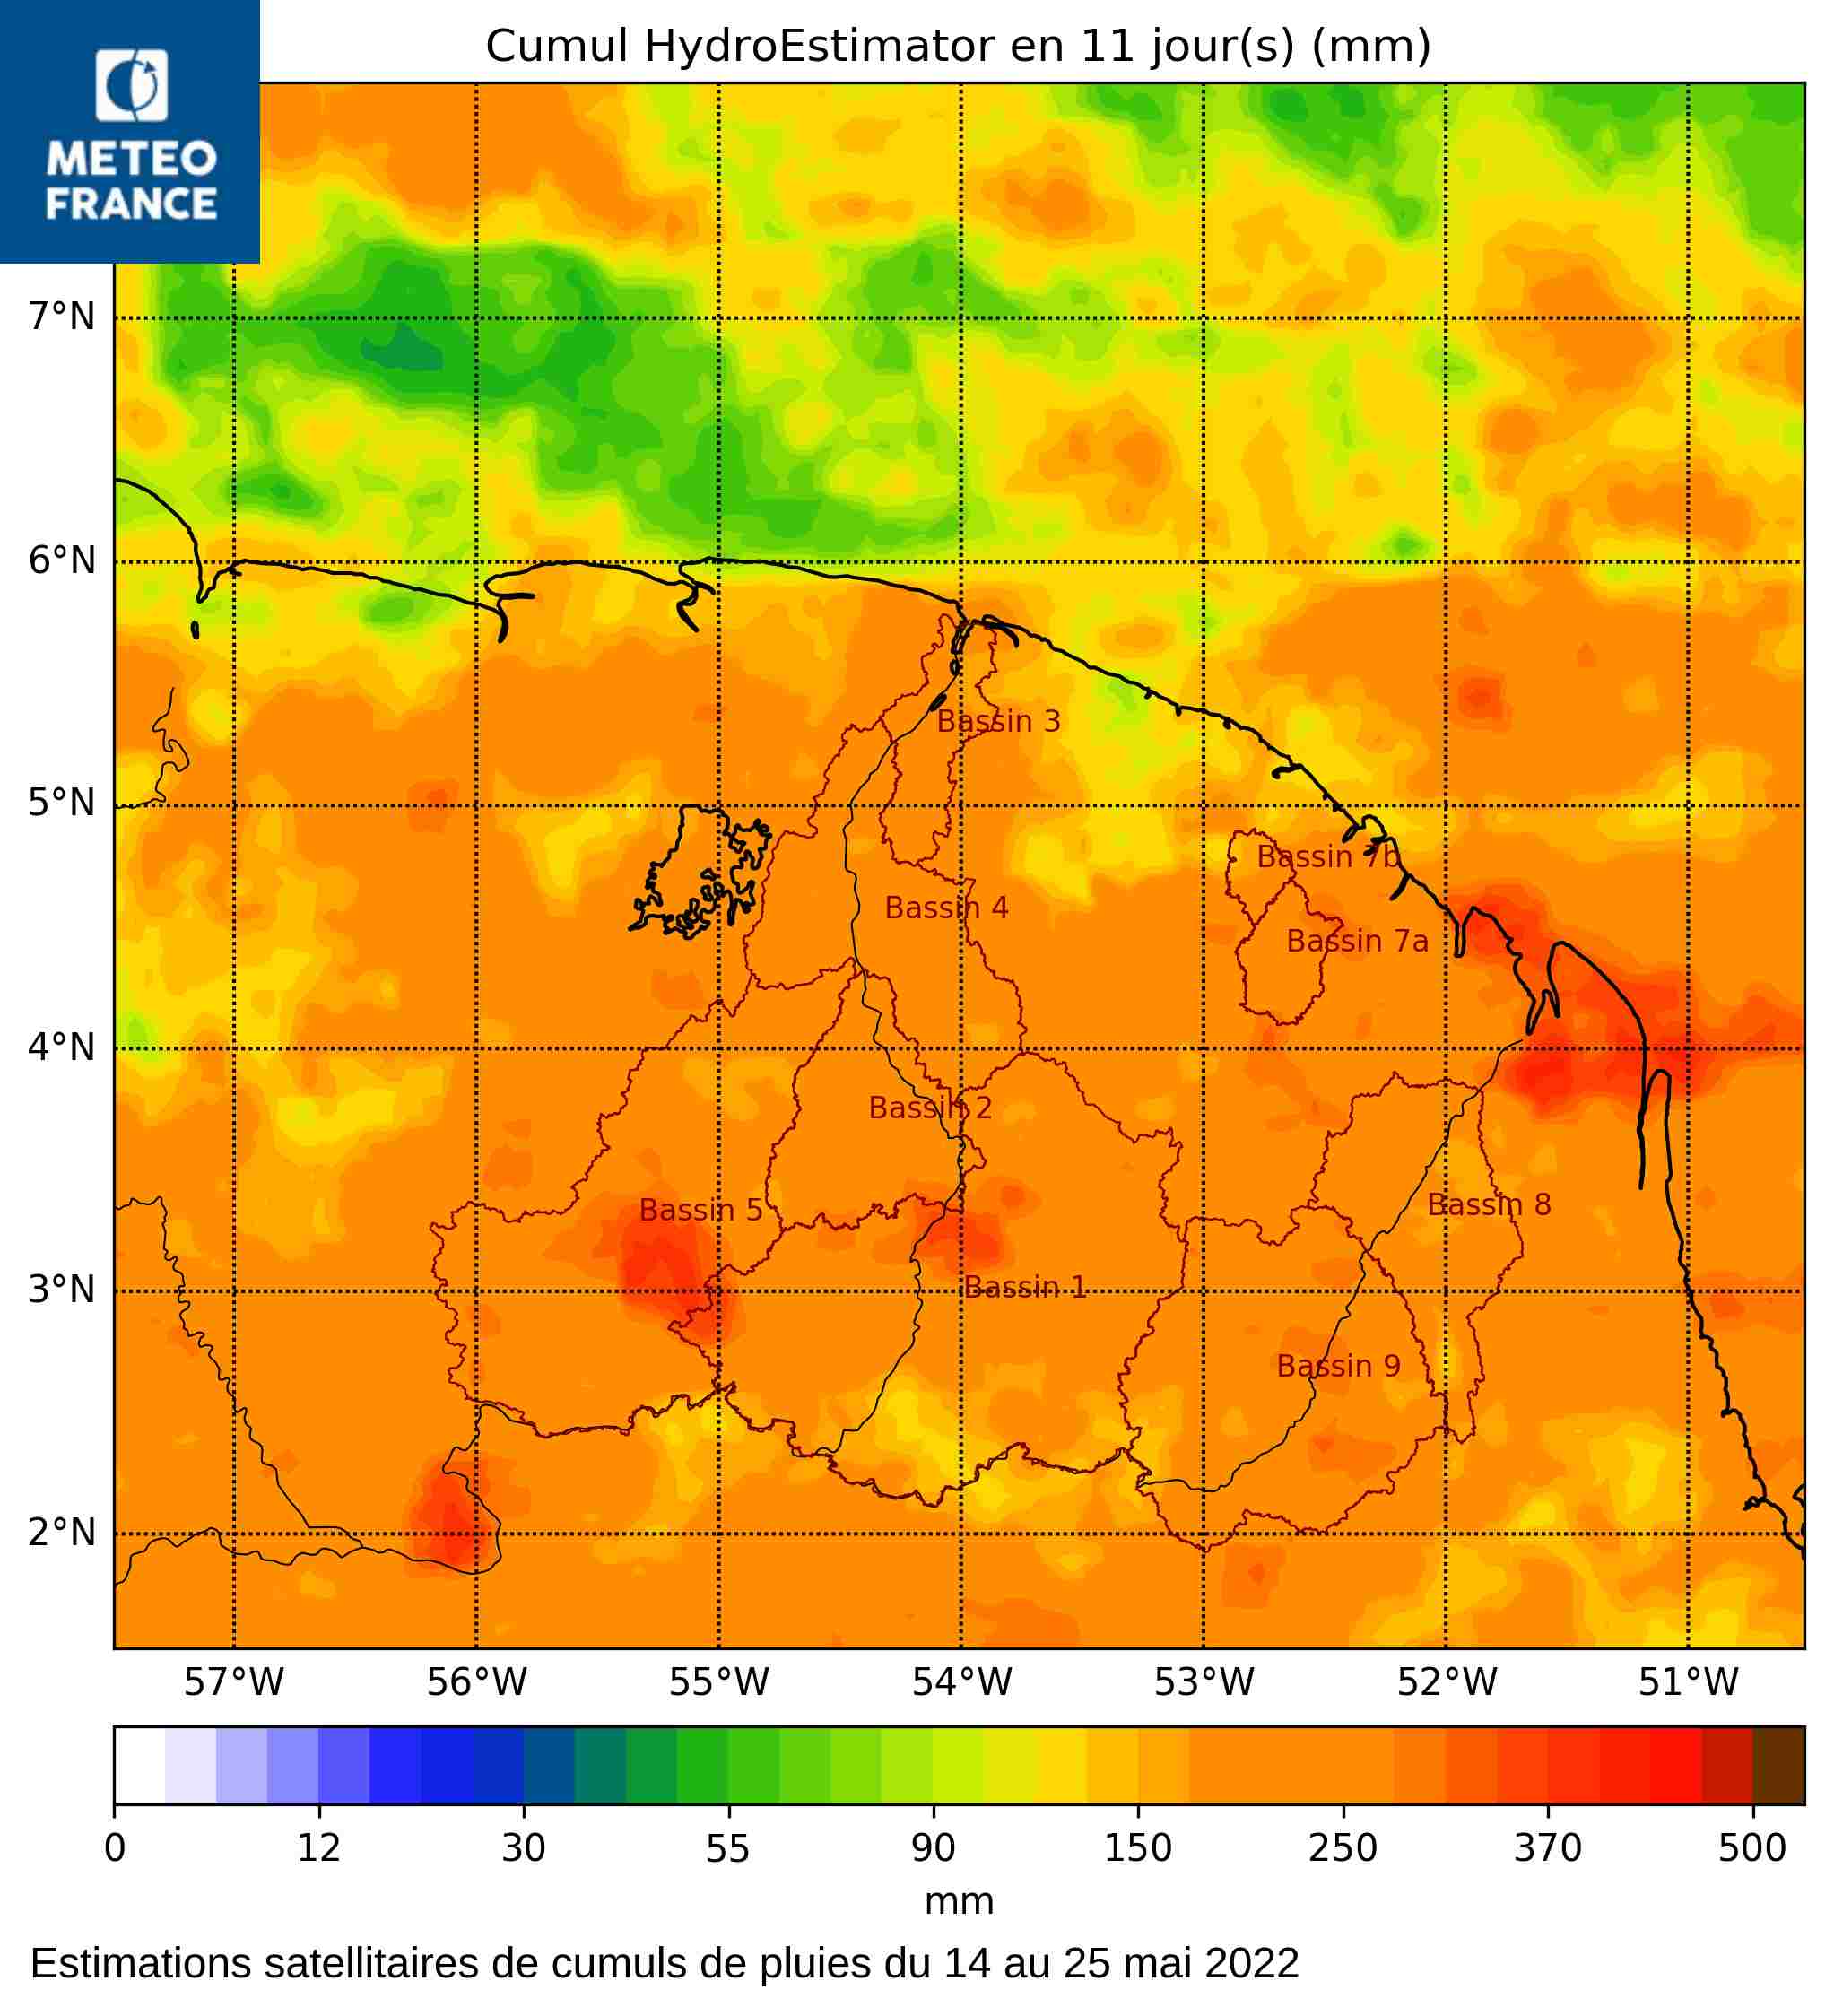 Estimations satellitaires de dumuls de pluies du 14 au 25 mai 2022